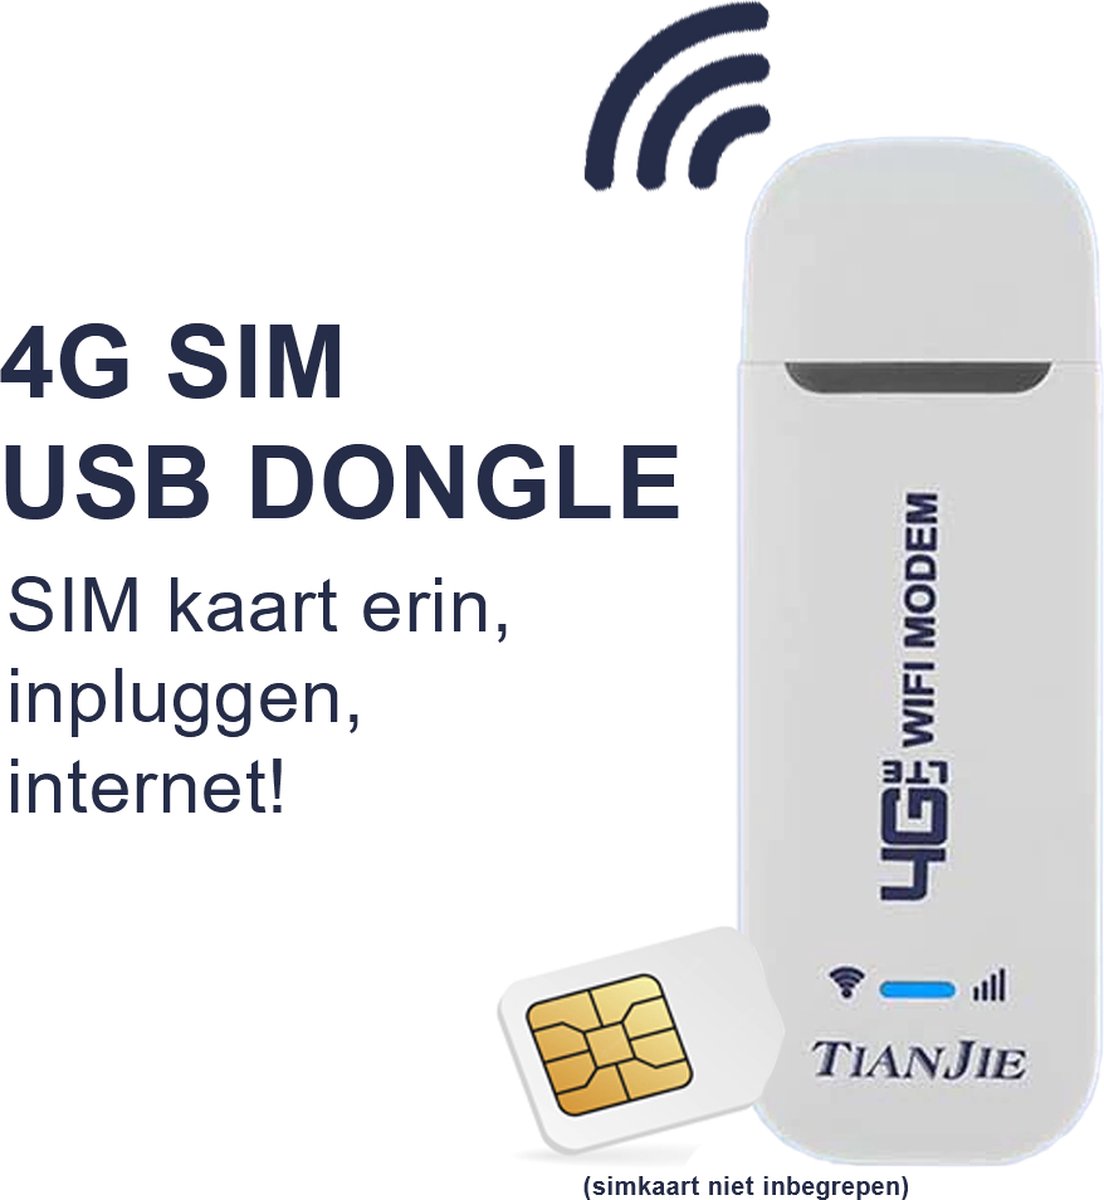 Dongle USB 4G WiFi 2 go - Routeur 4g - Modem WiFi - pour